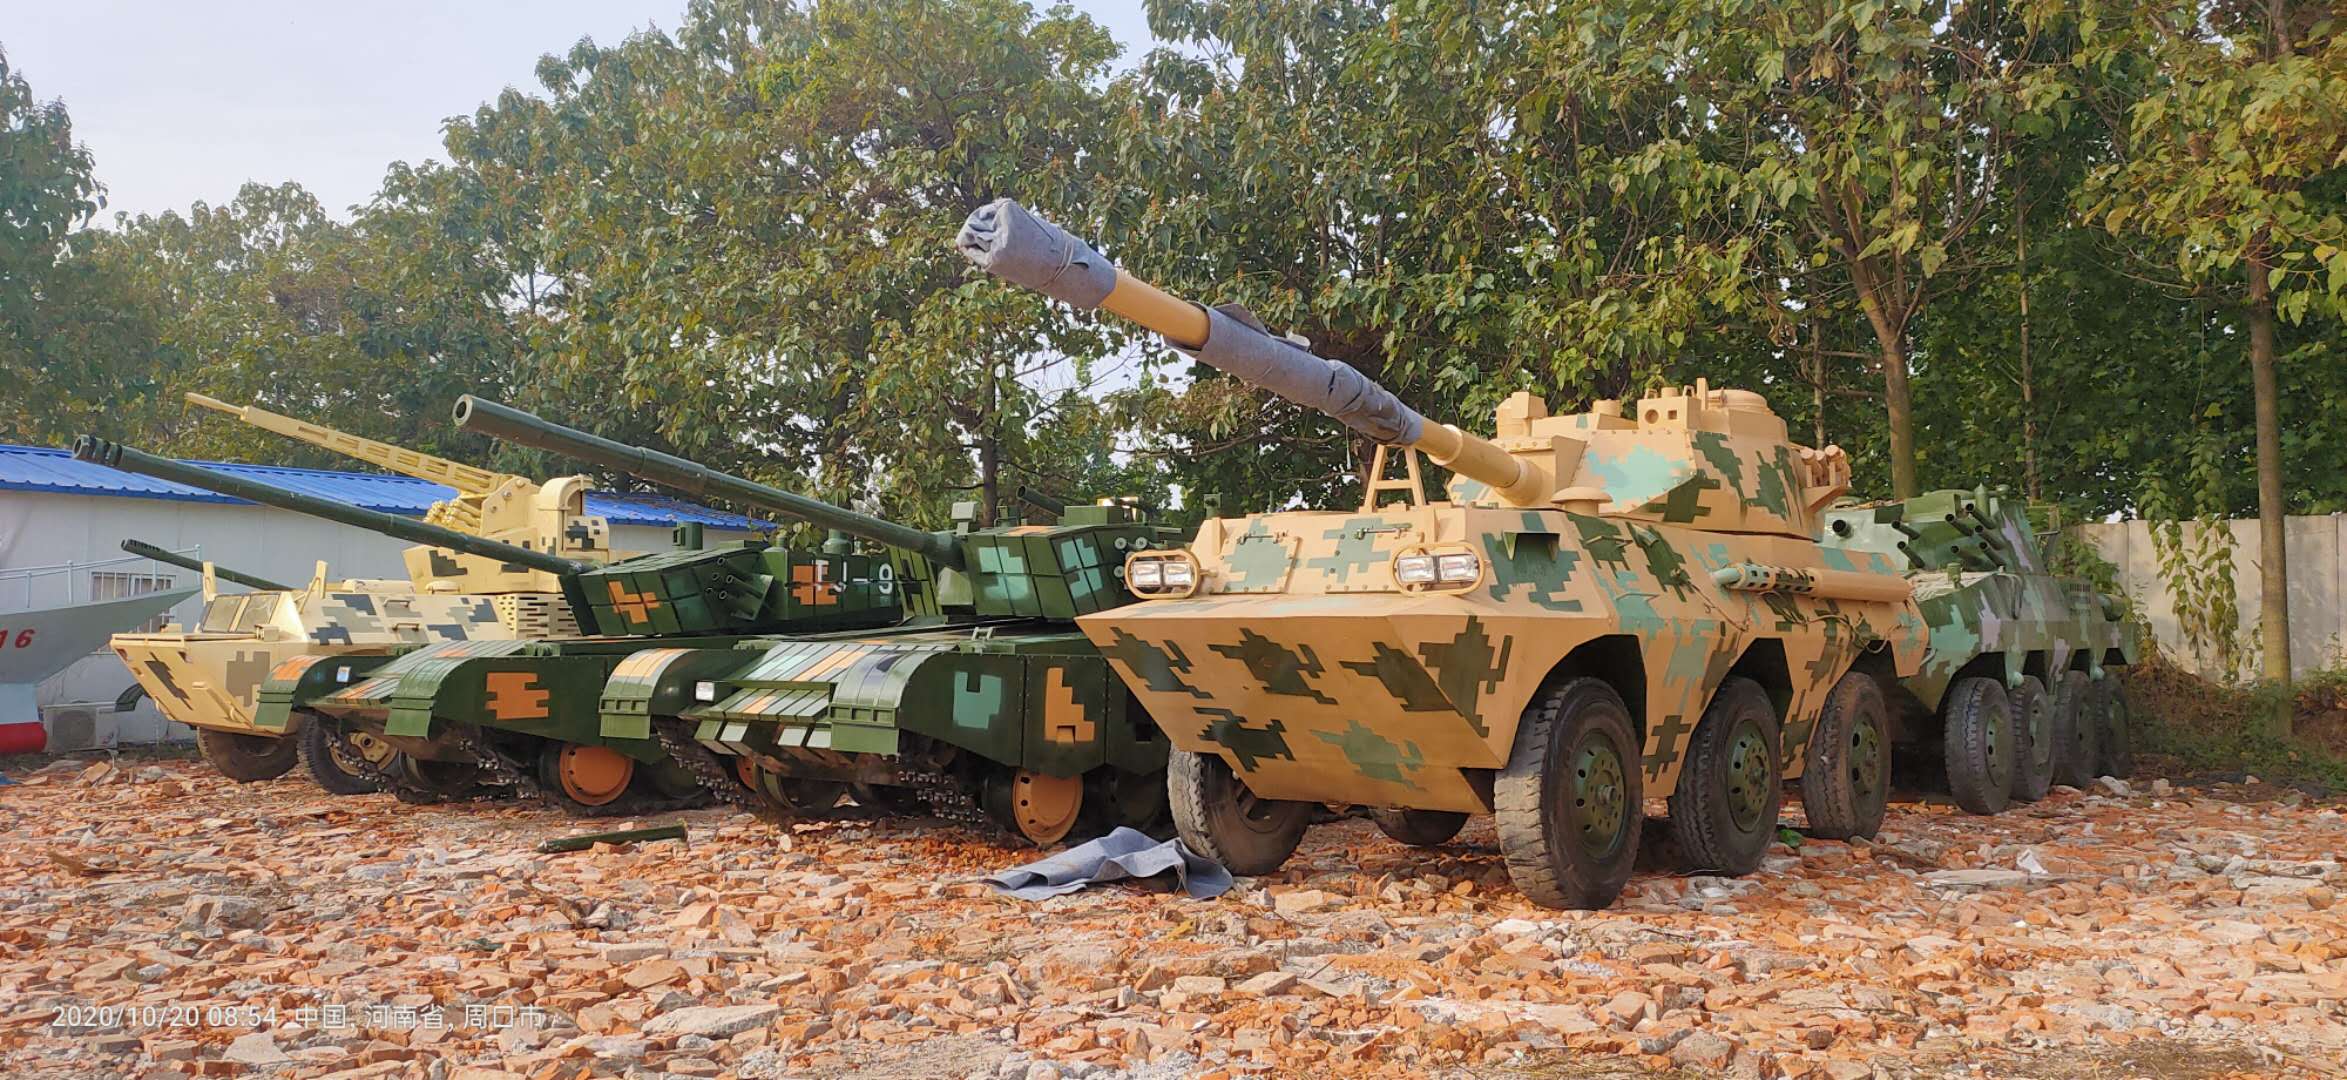 军事模型 大型军模设备 装甲车模型展览装备2